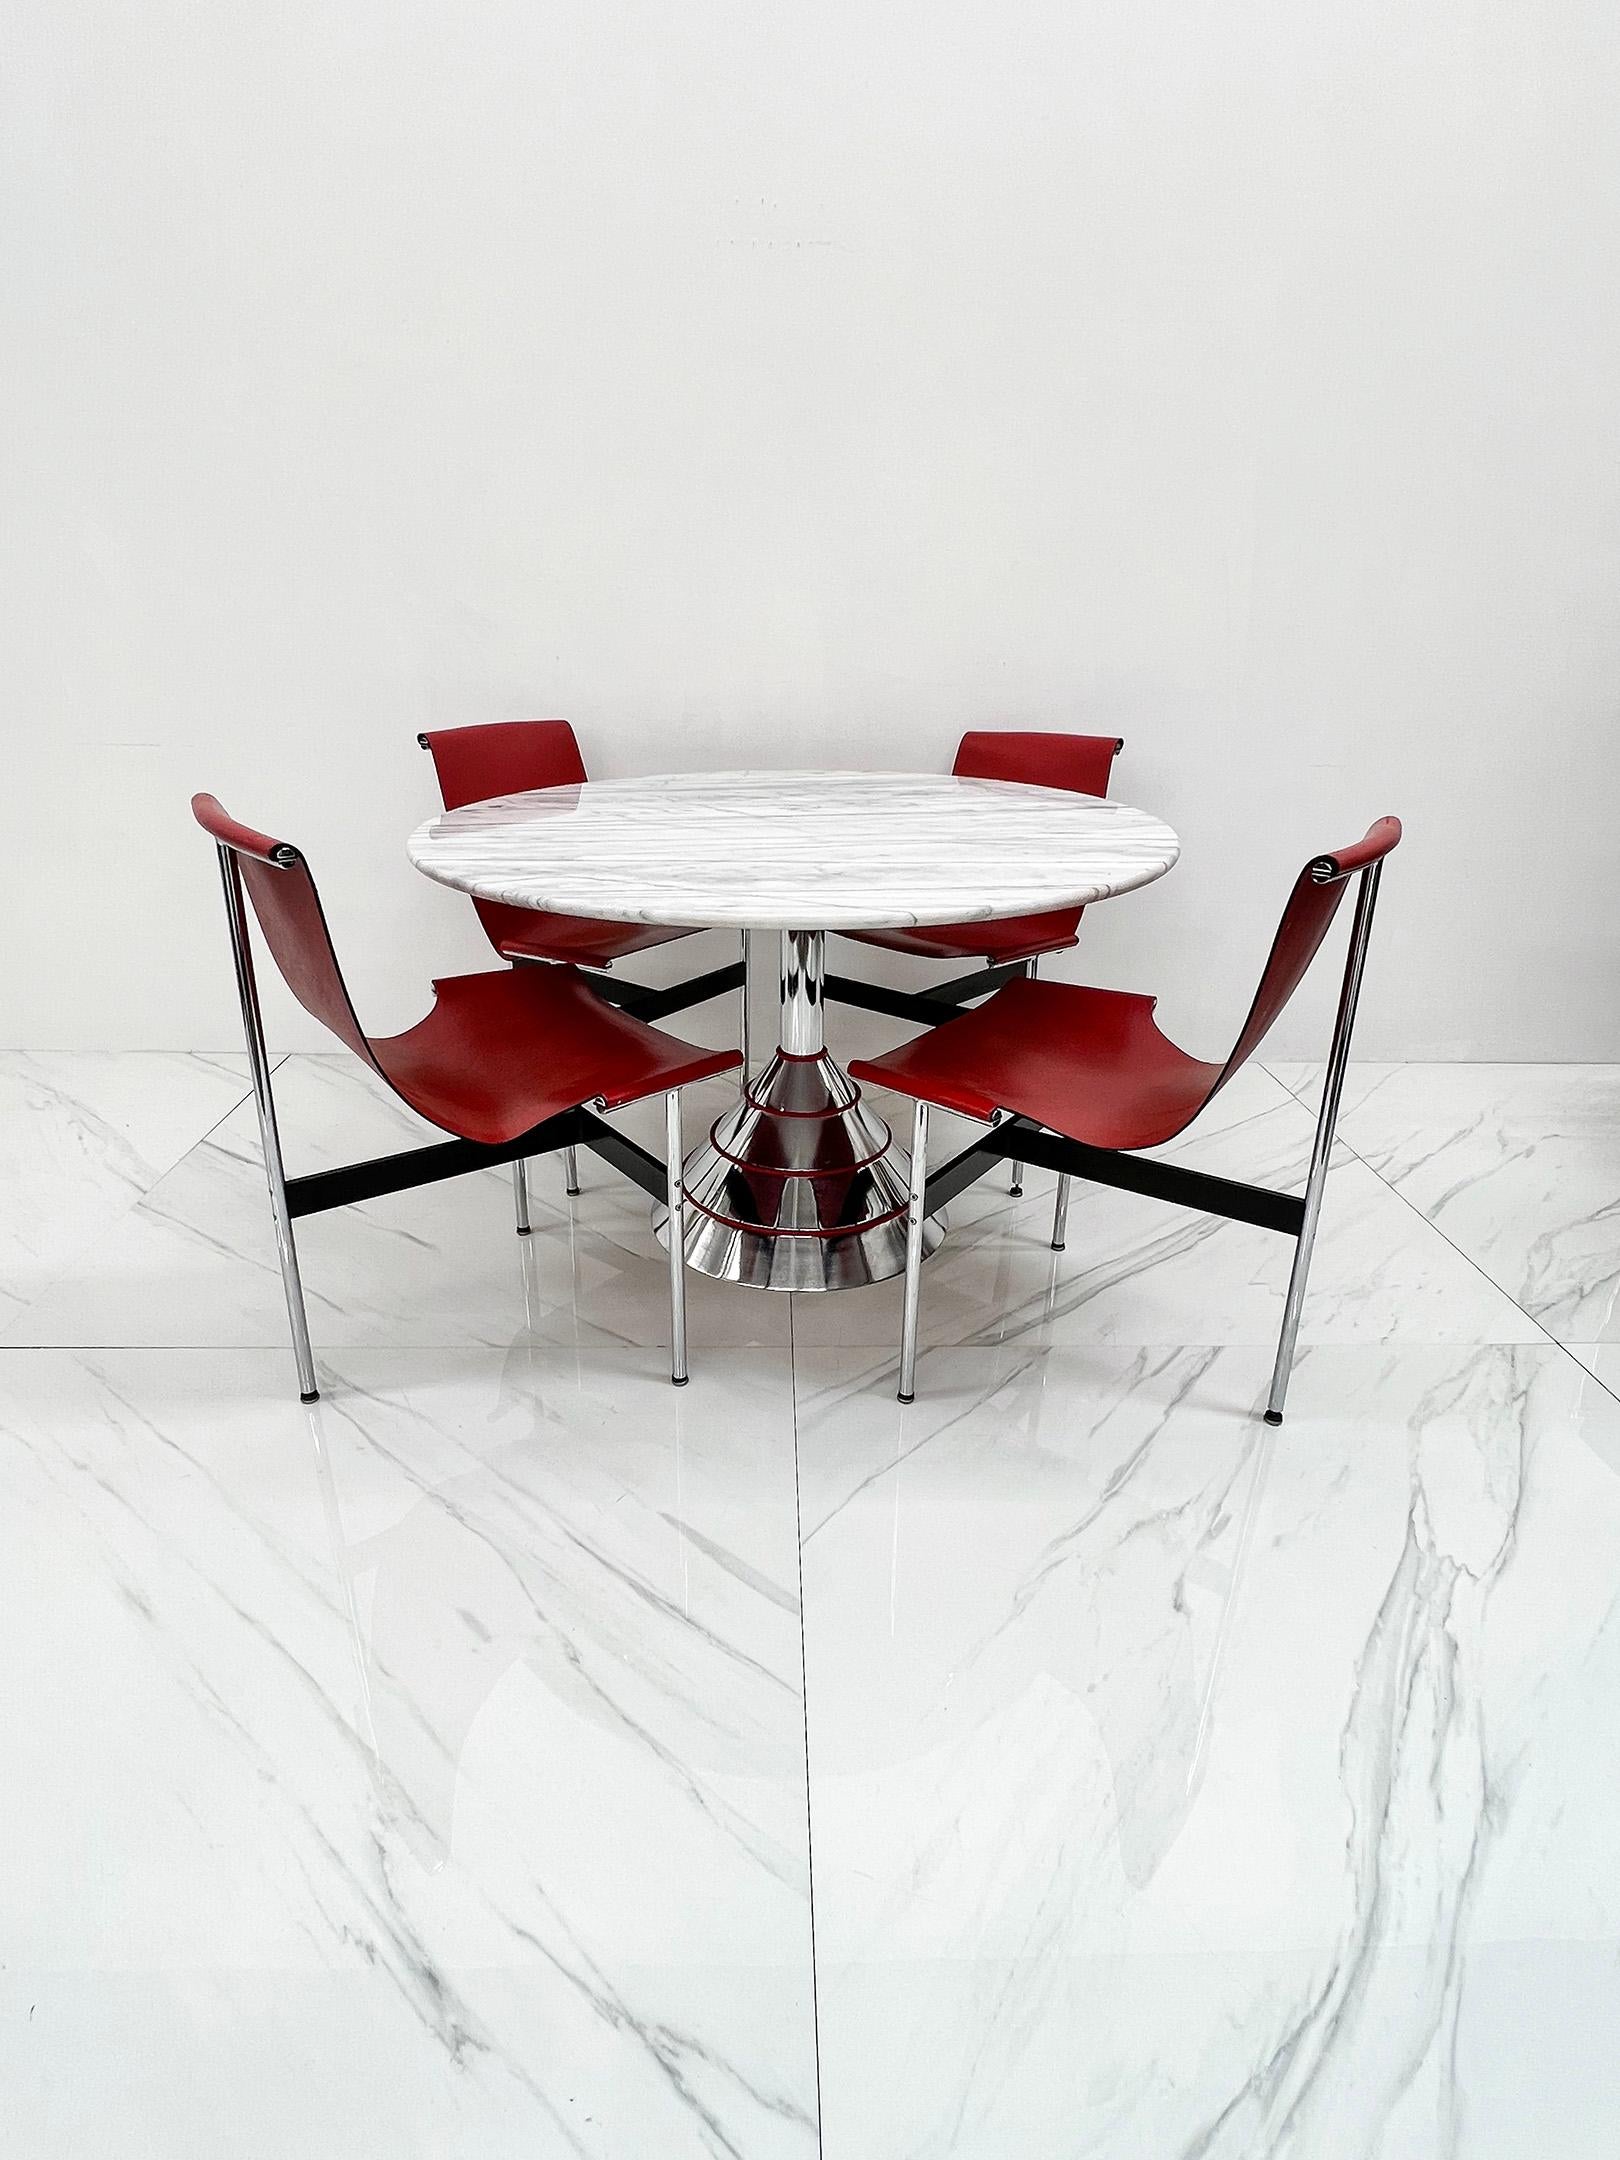 Dieser Esstisch ist atemberaubend! Ein wahres Meisterwerk des Memphis Milano-Stils, inspiriert von den ikonischen Entwürfen von Ettore Sottsass, Vico Magistretti und anderen Mitgliedern des einflussreichen Designkollektivs. Der Tisch verfügt über